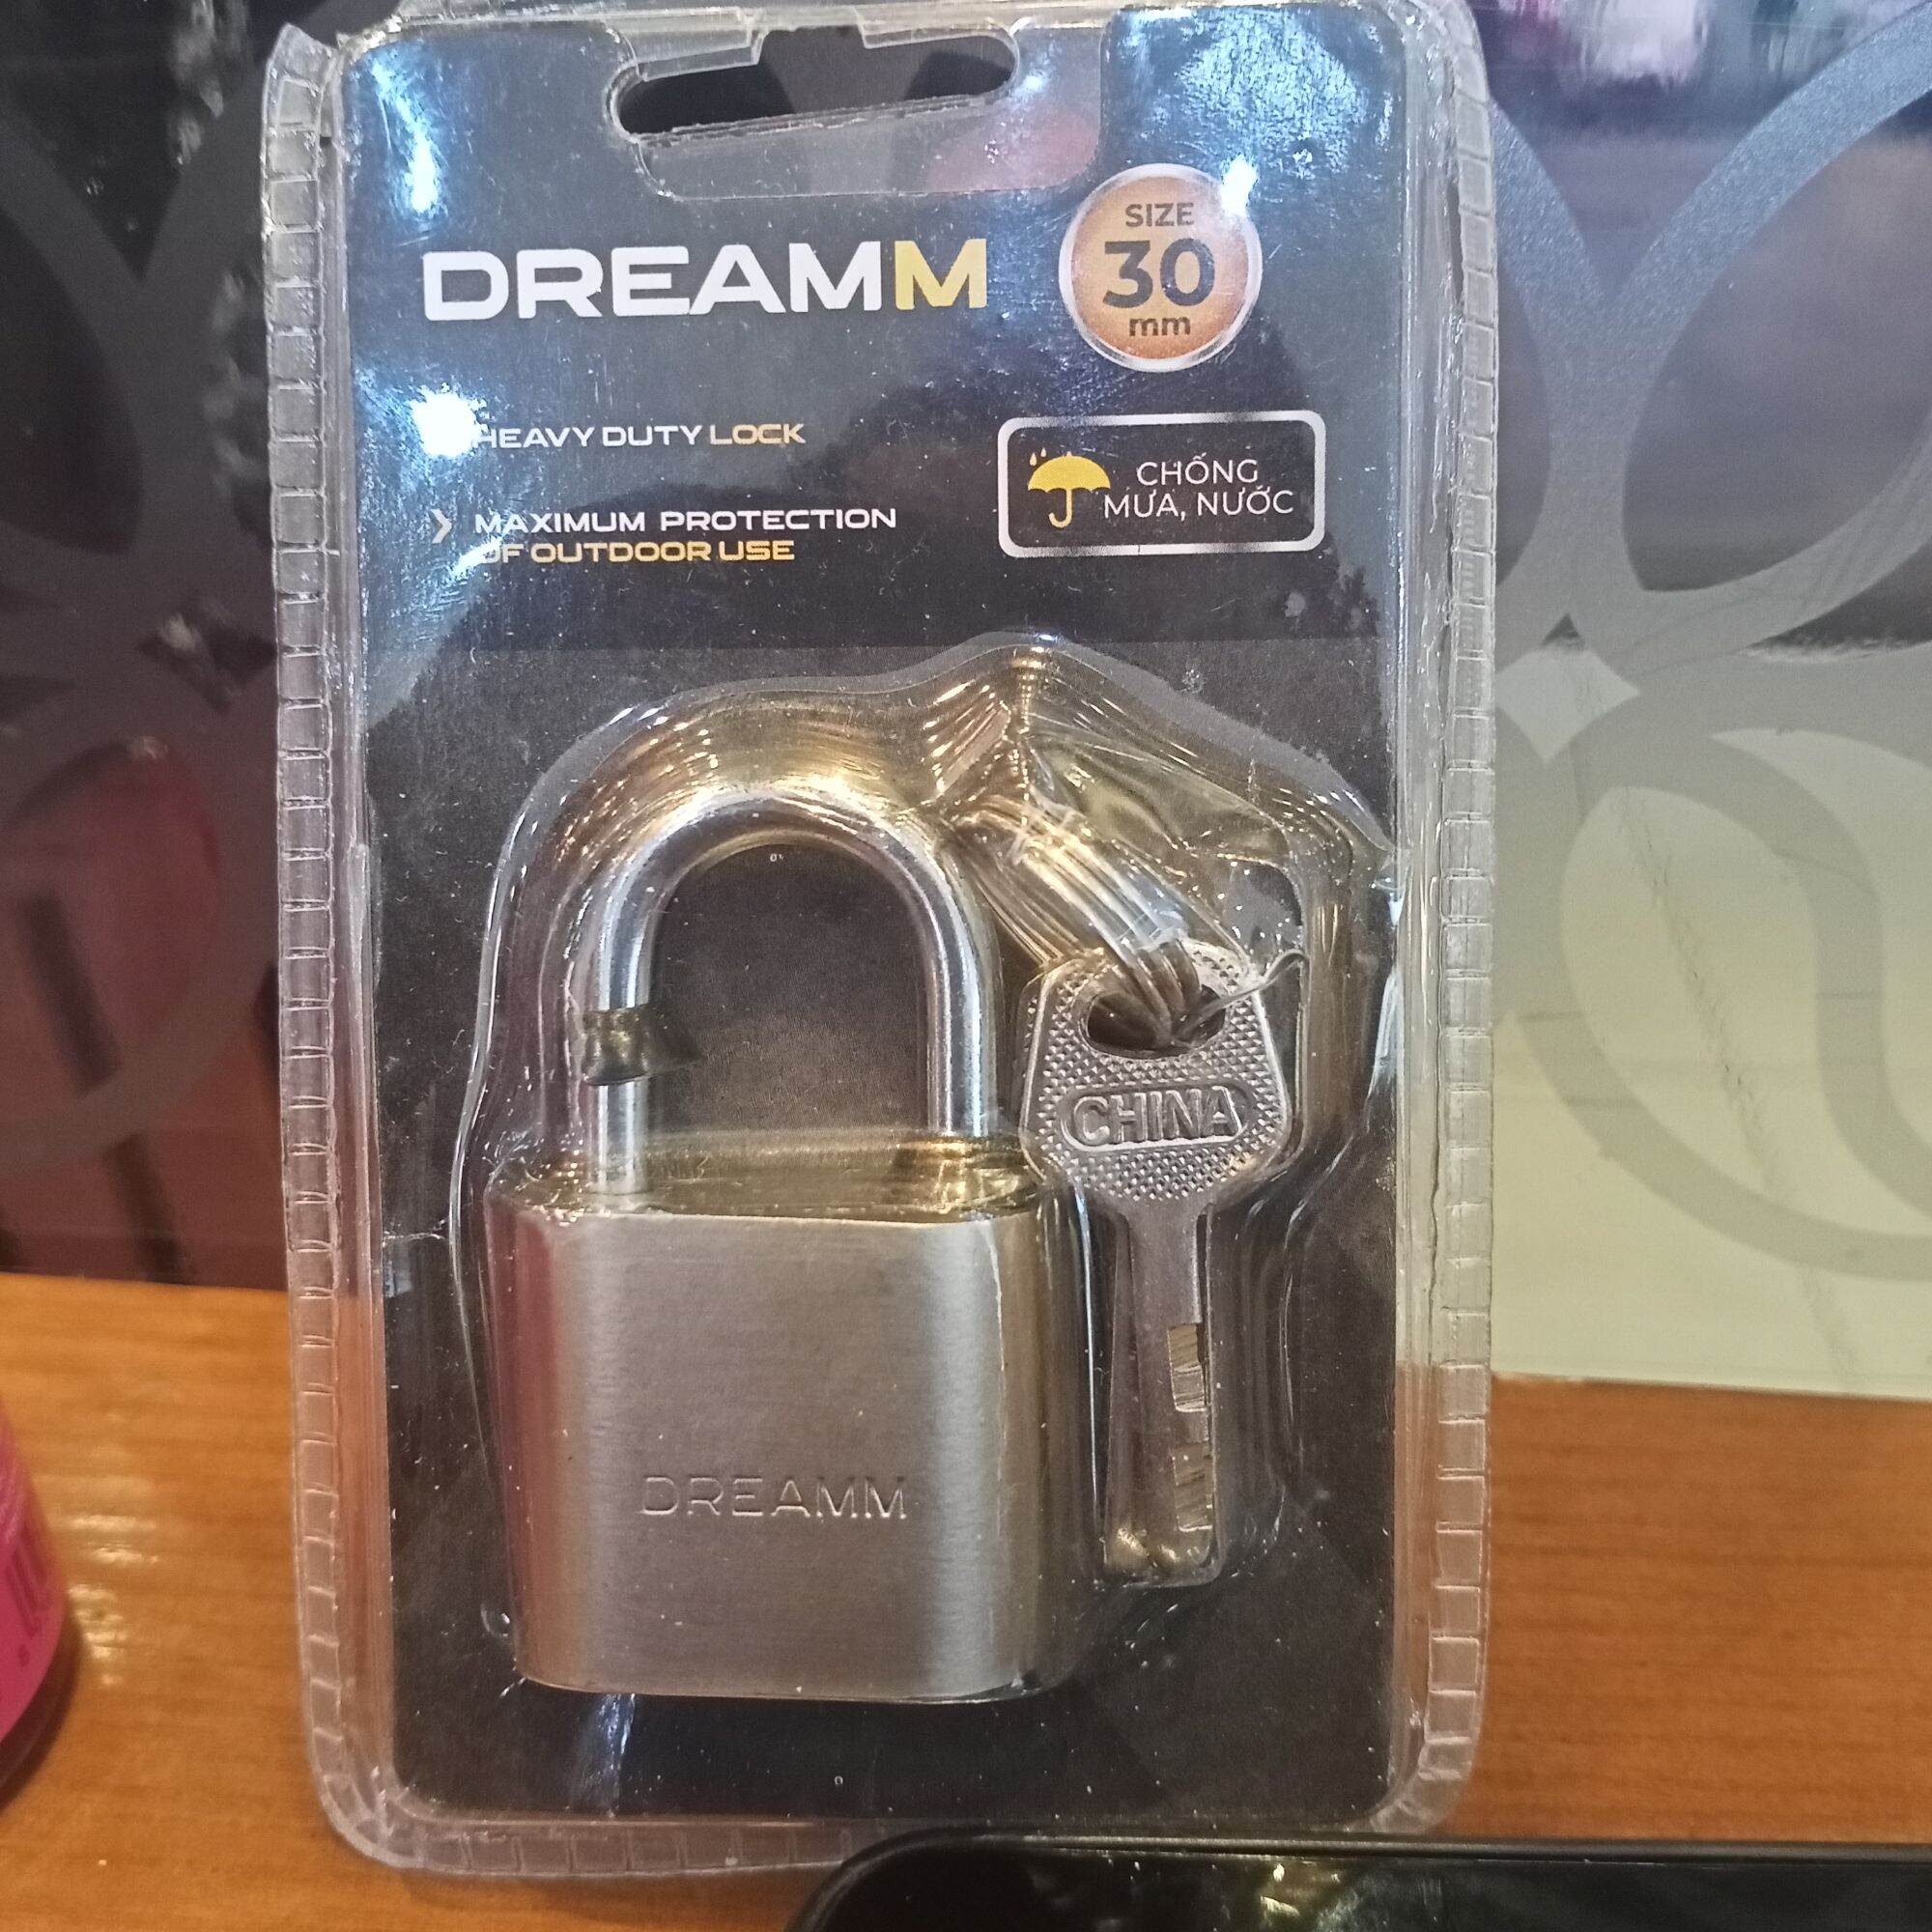 Khoá chống nước DreamM Heavy duty Lock